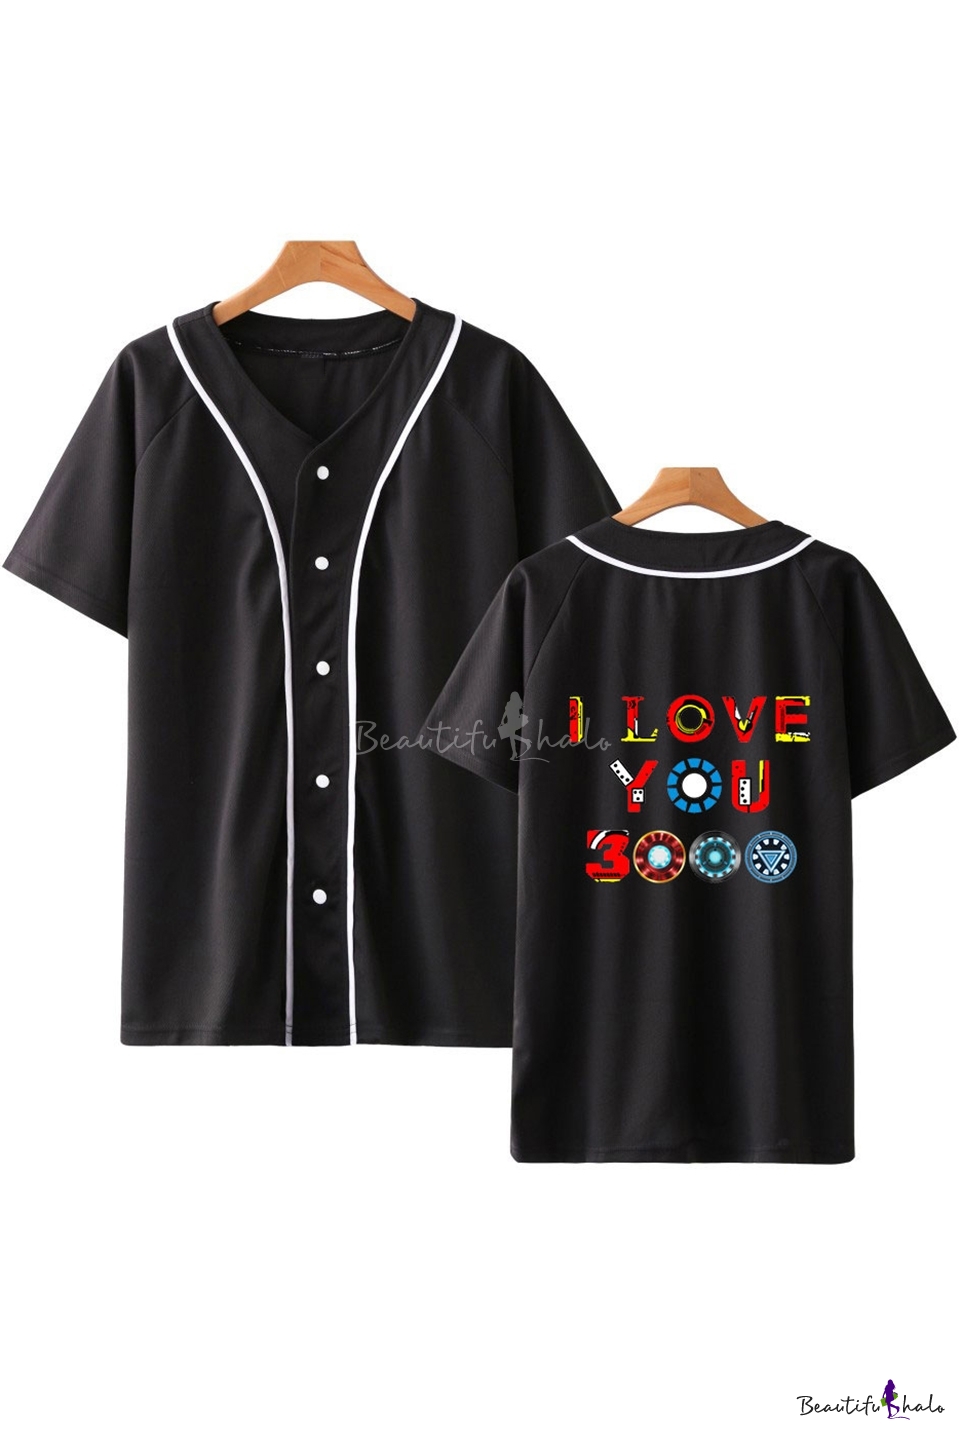 baseball type shirts